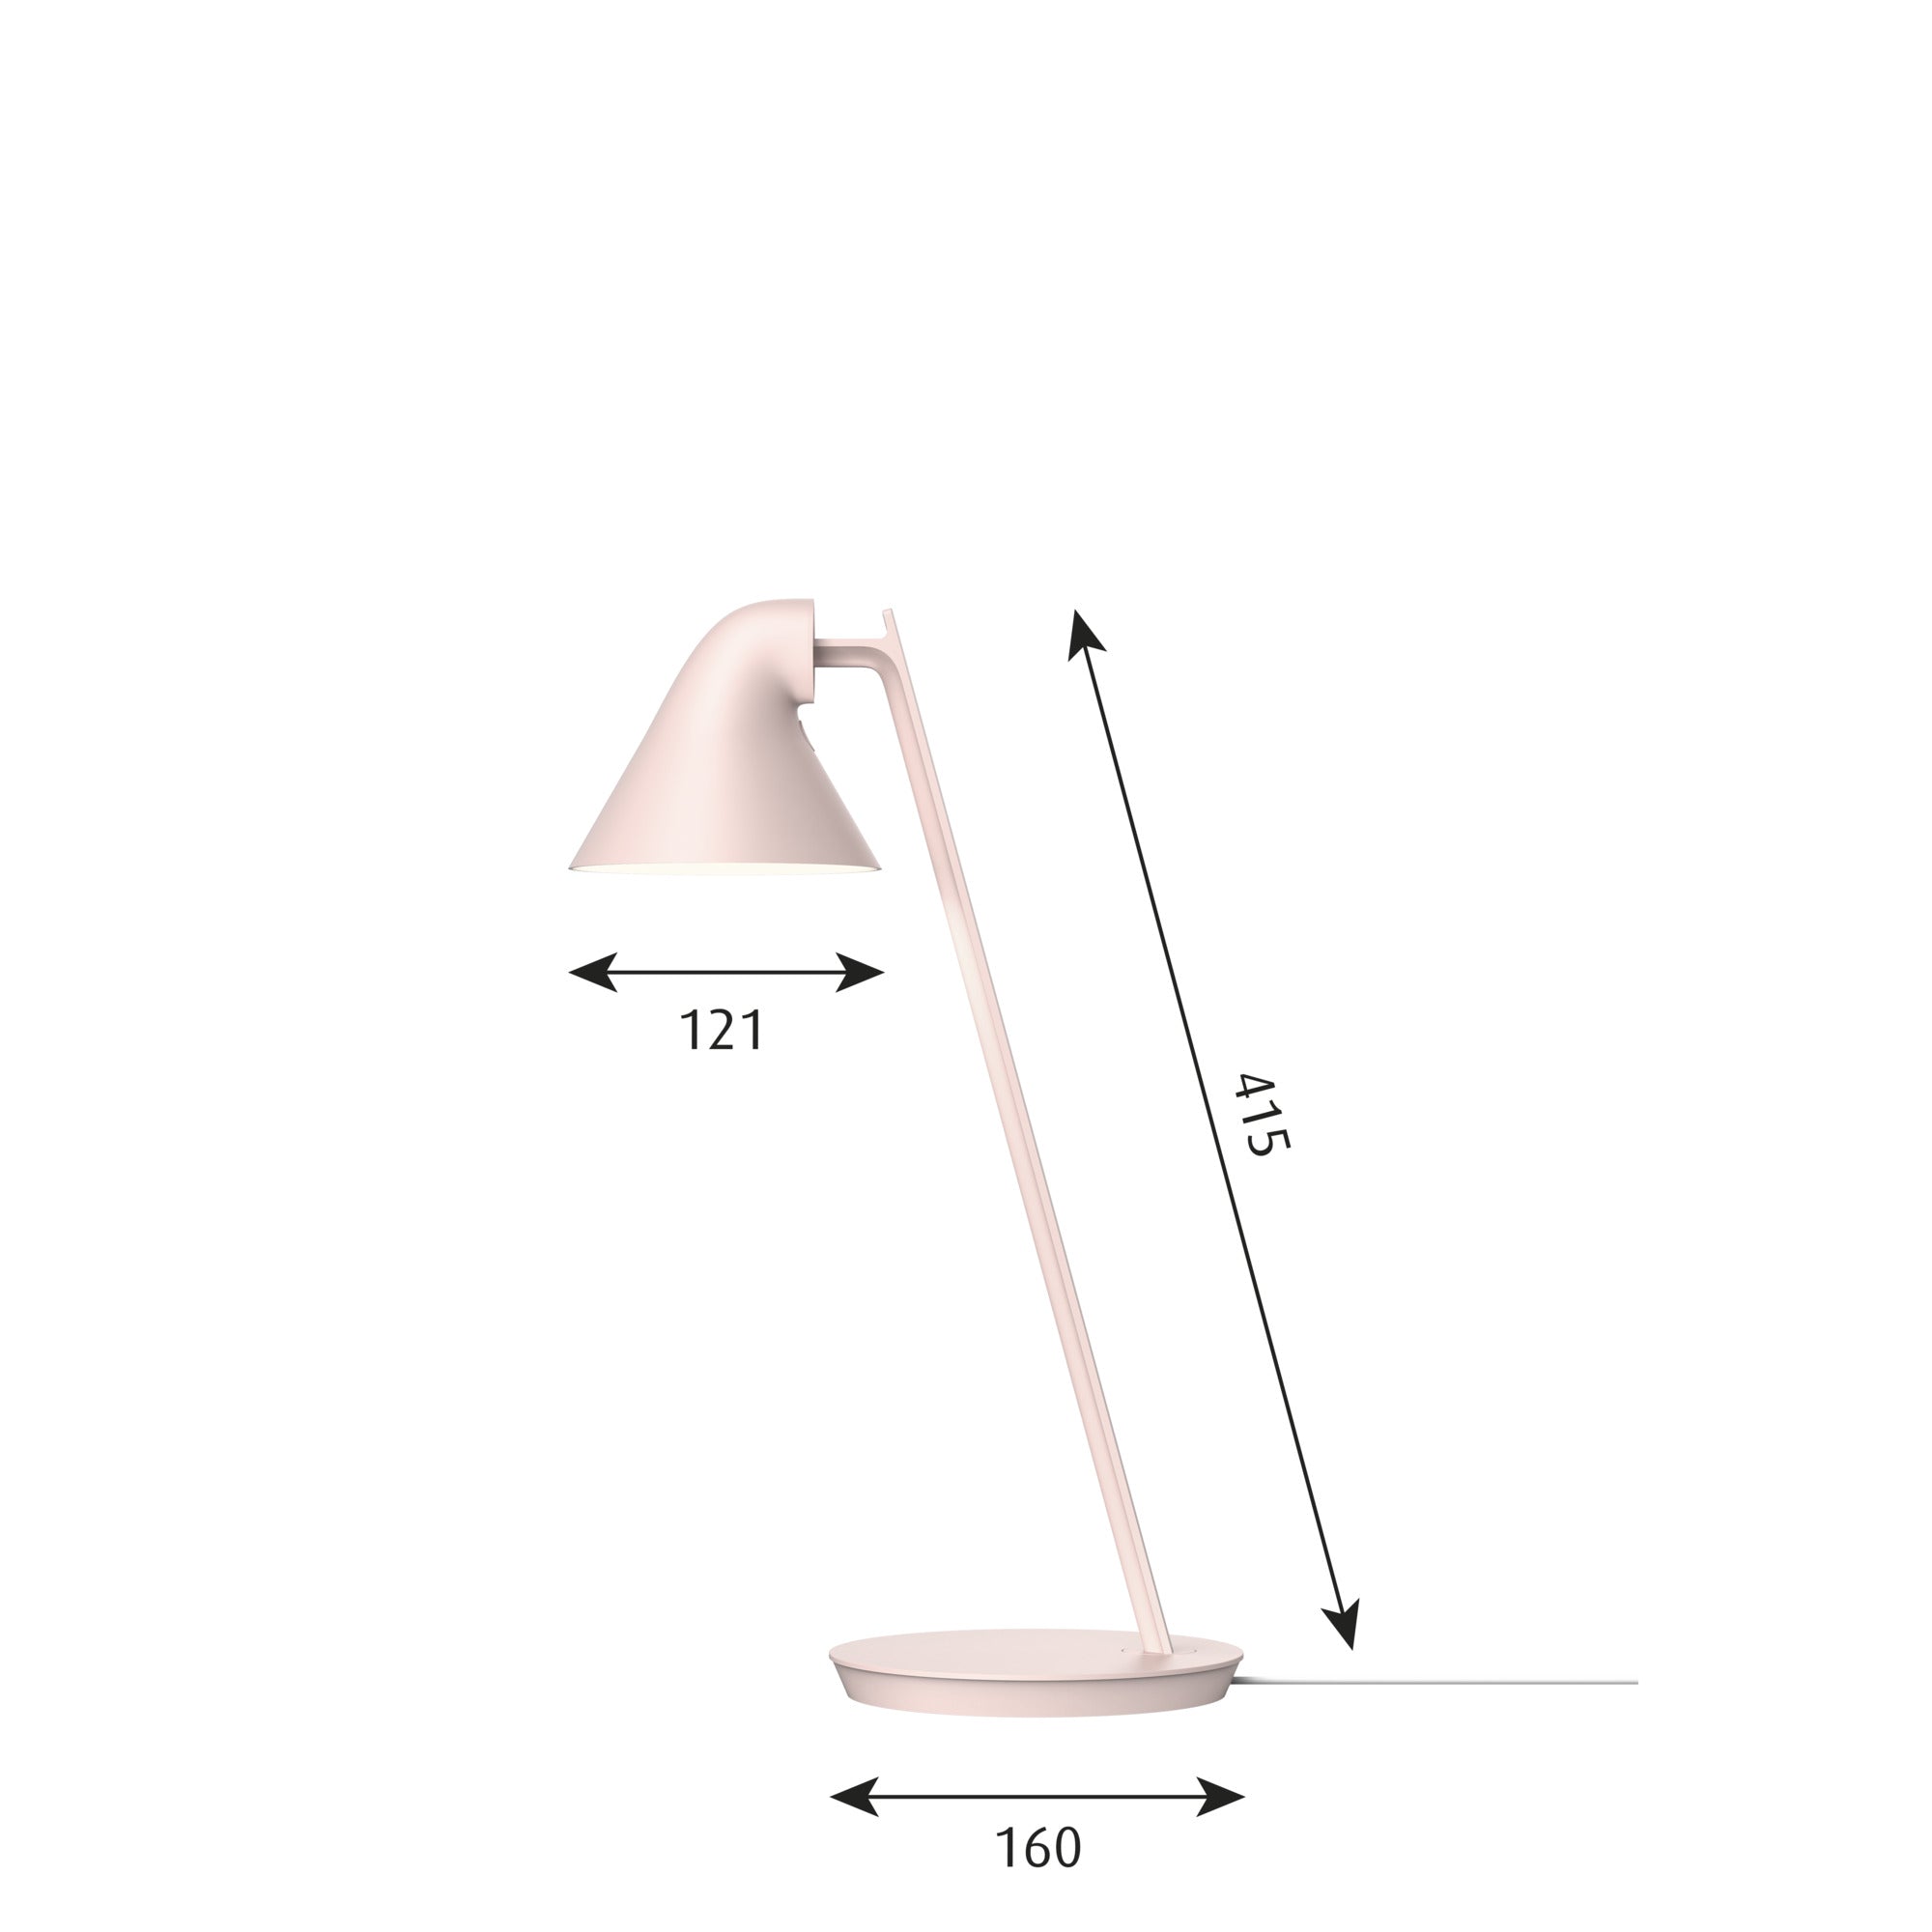 Louis Poulsen Njp Mini Table Lamp, Pale Pink